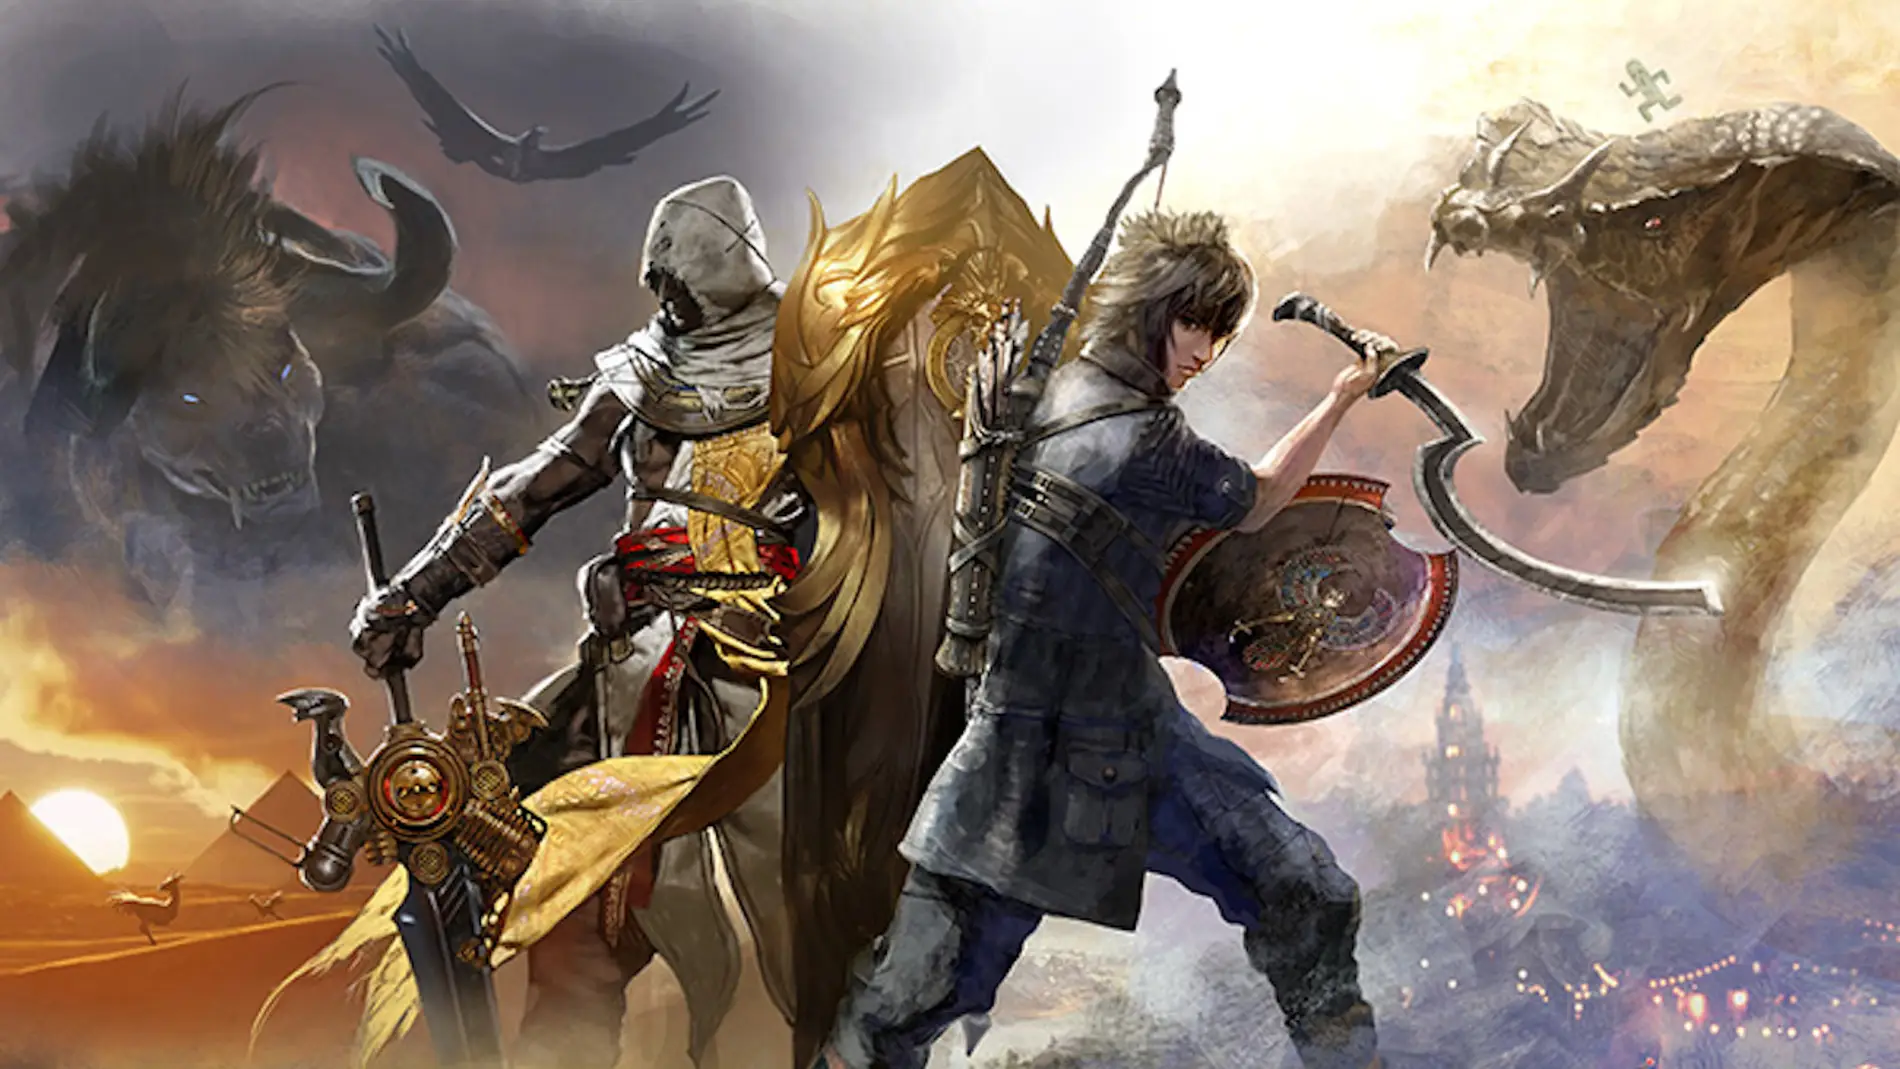 Colaboración entre Assassin's Creed y Final Fantasy XV